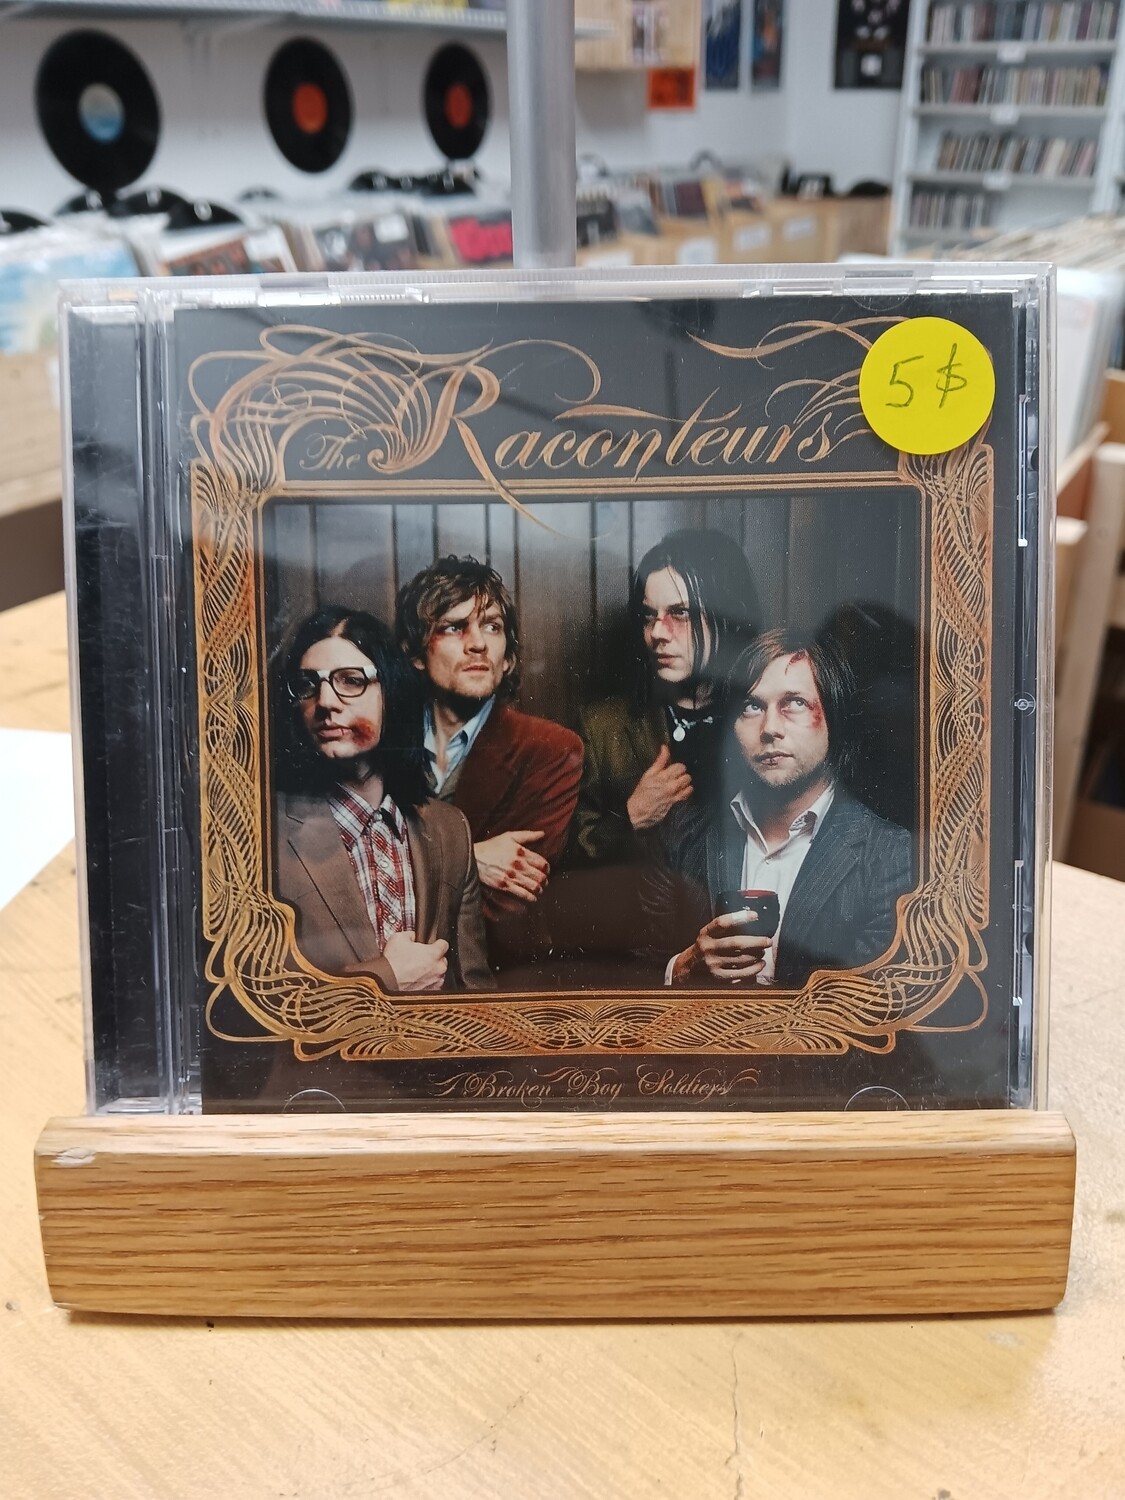 The Raconteurs - Broken Boys Soldiers (CD)